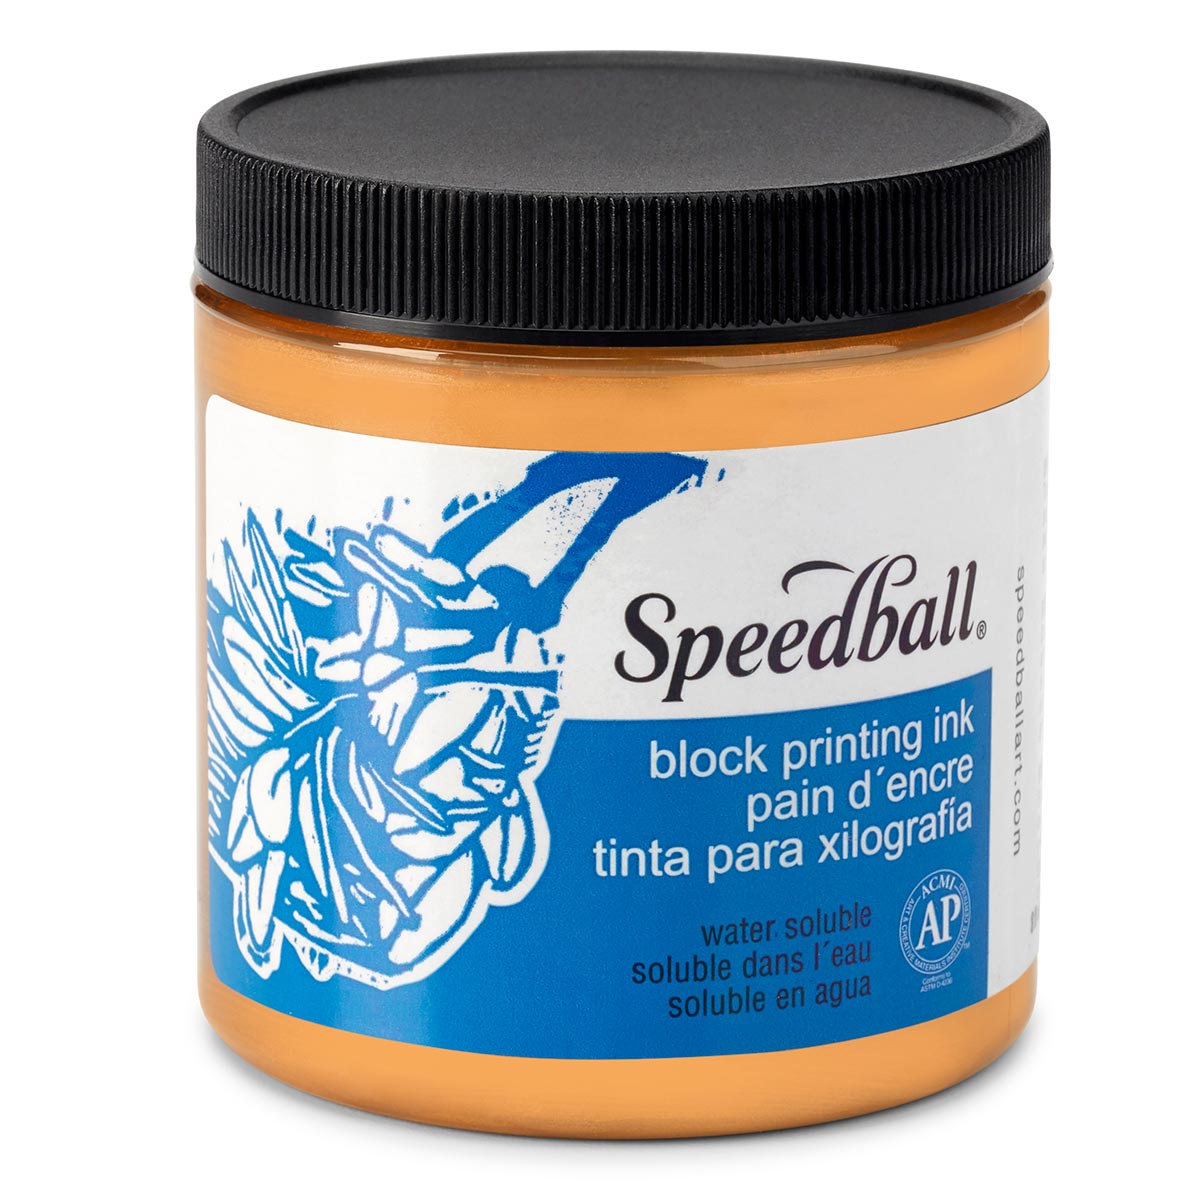 Speedball-Wasser lösliche Block-Tinte 236ml (8oz) -Kupfer